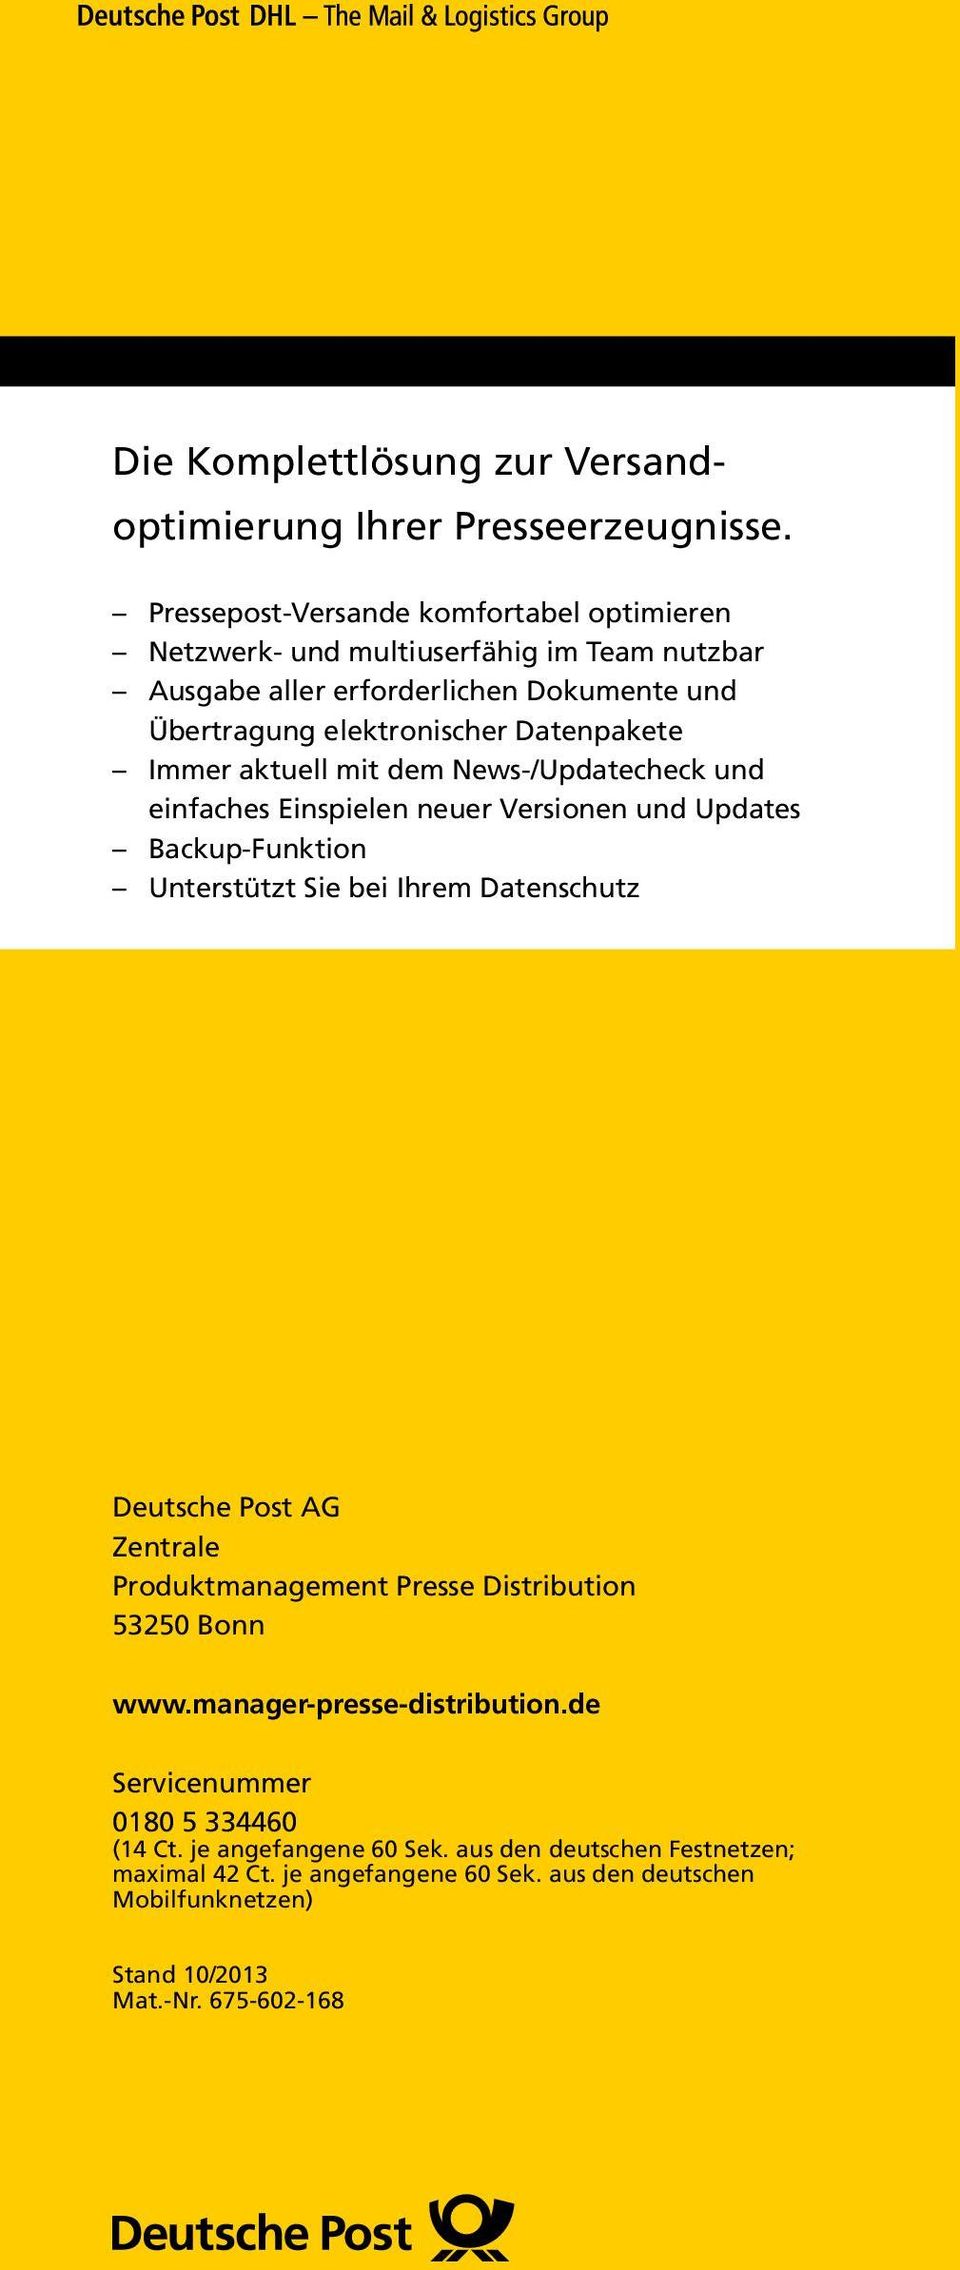 Immer aktuell mit dem News-/Updatecheck und einfaches Einspielen neuer Versionen und Updates Backup-Funktion Unterstützt Sie bei Ihrem Datenschutz Deutsche Post AG Zentrale